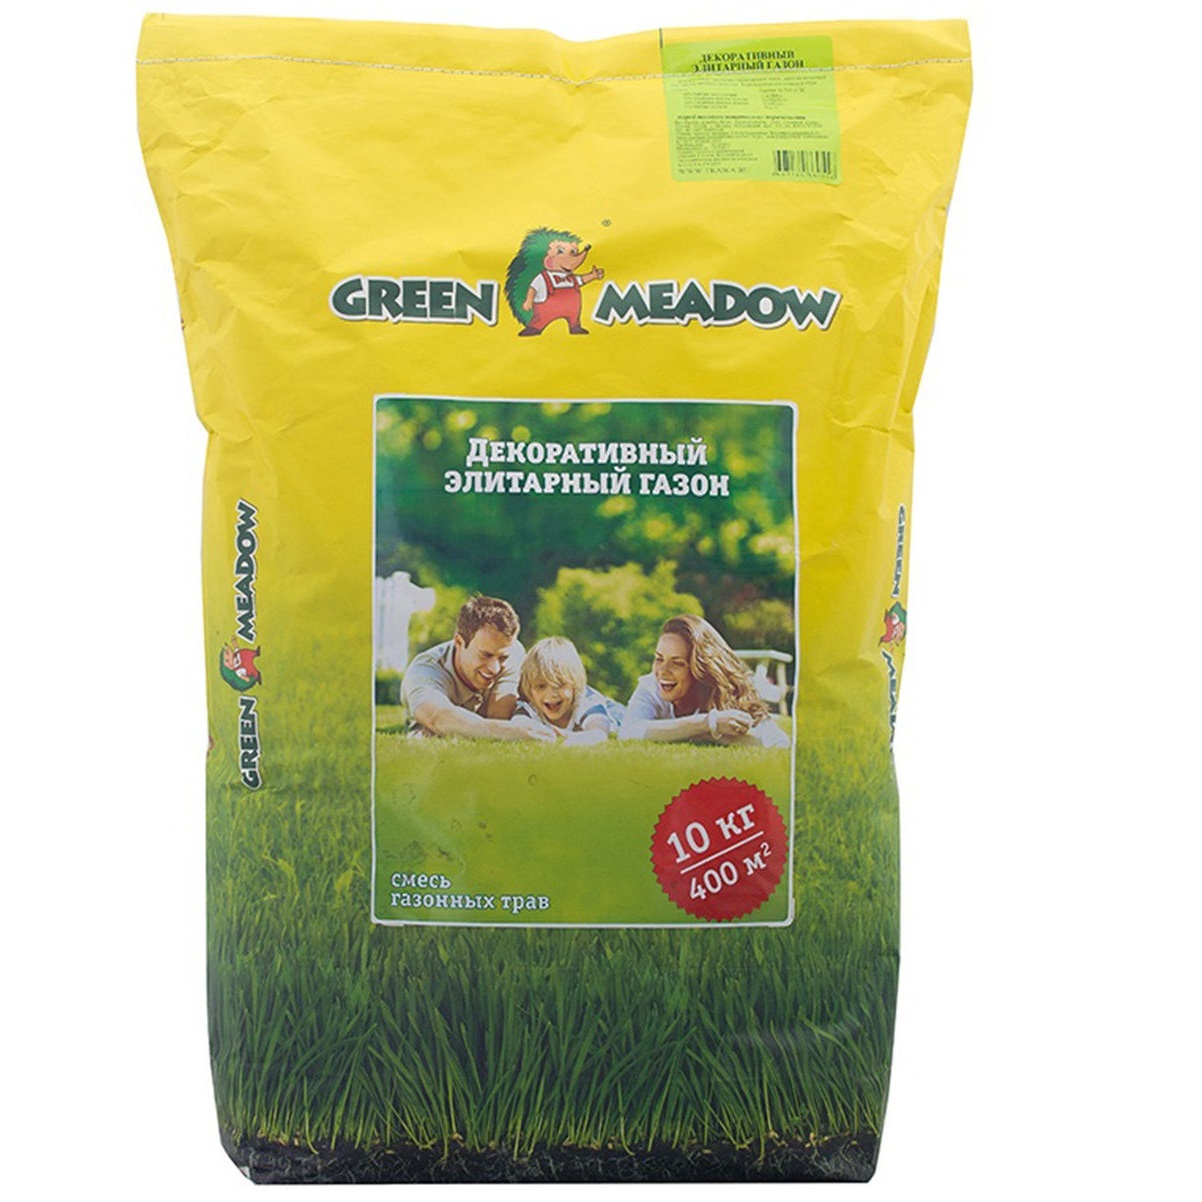 Газон Green Meadow декоративный элитарный 10 кг смесь семян green meadow декоративный элитарный 10кг